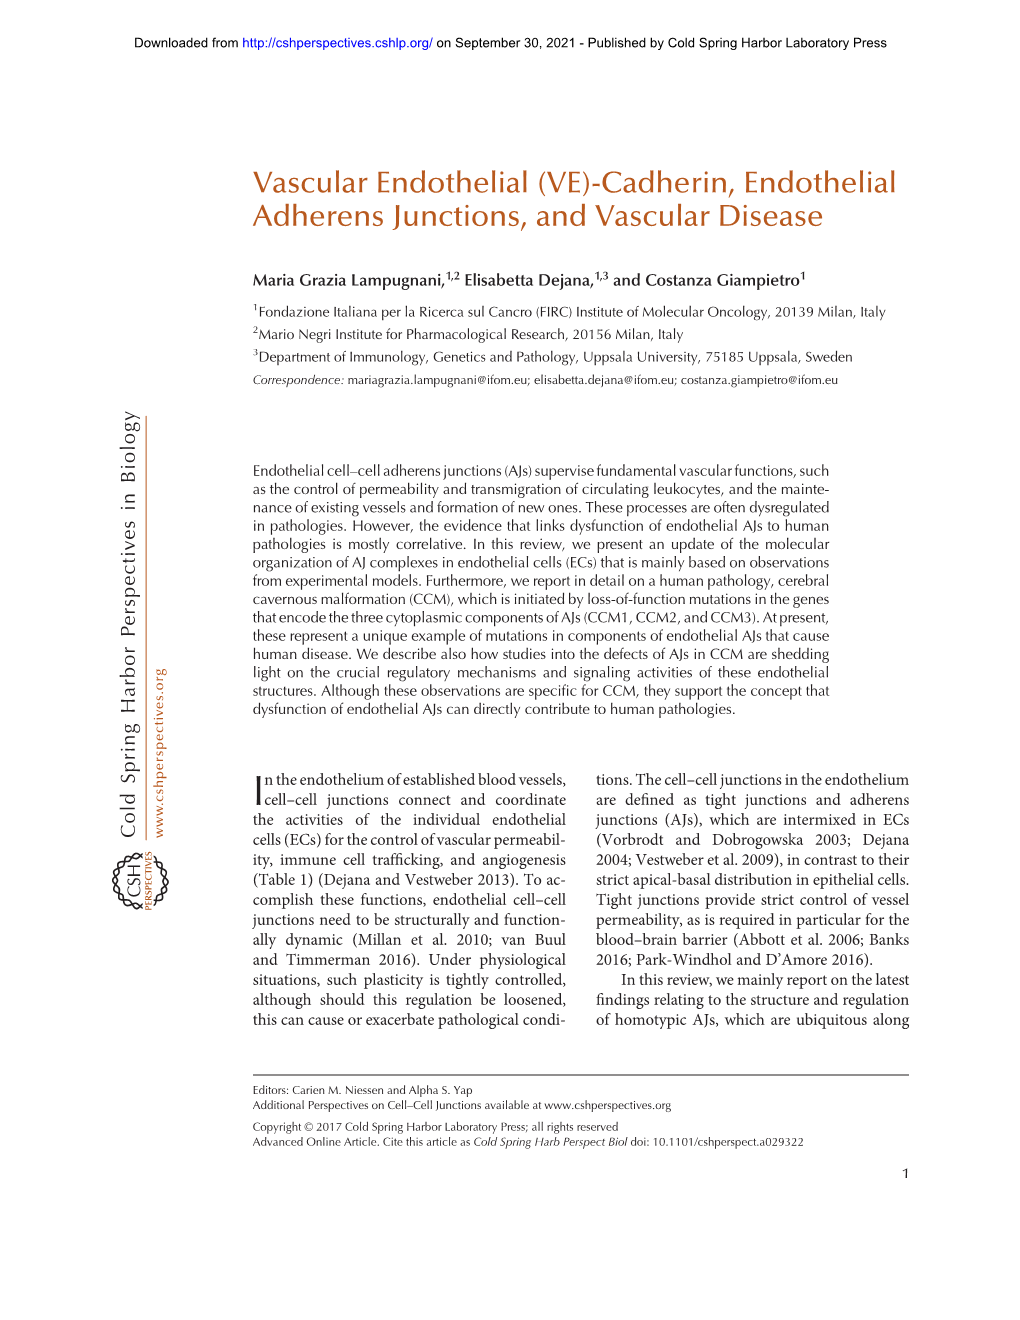 (VE)-Cadherin, Endothelial Adherens Junctions, and Vascular Disease